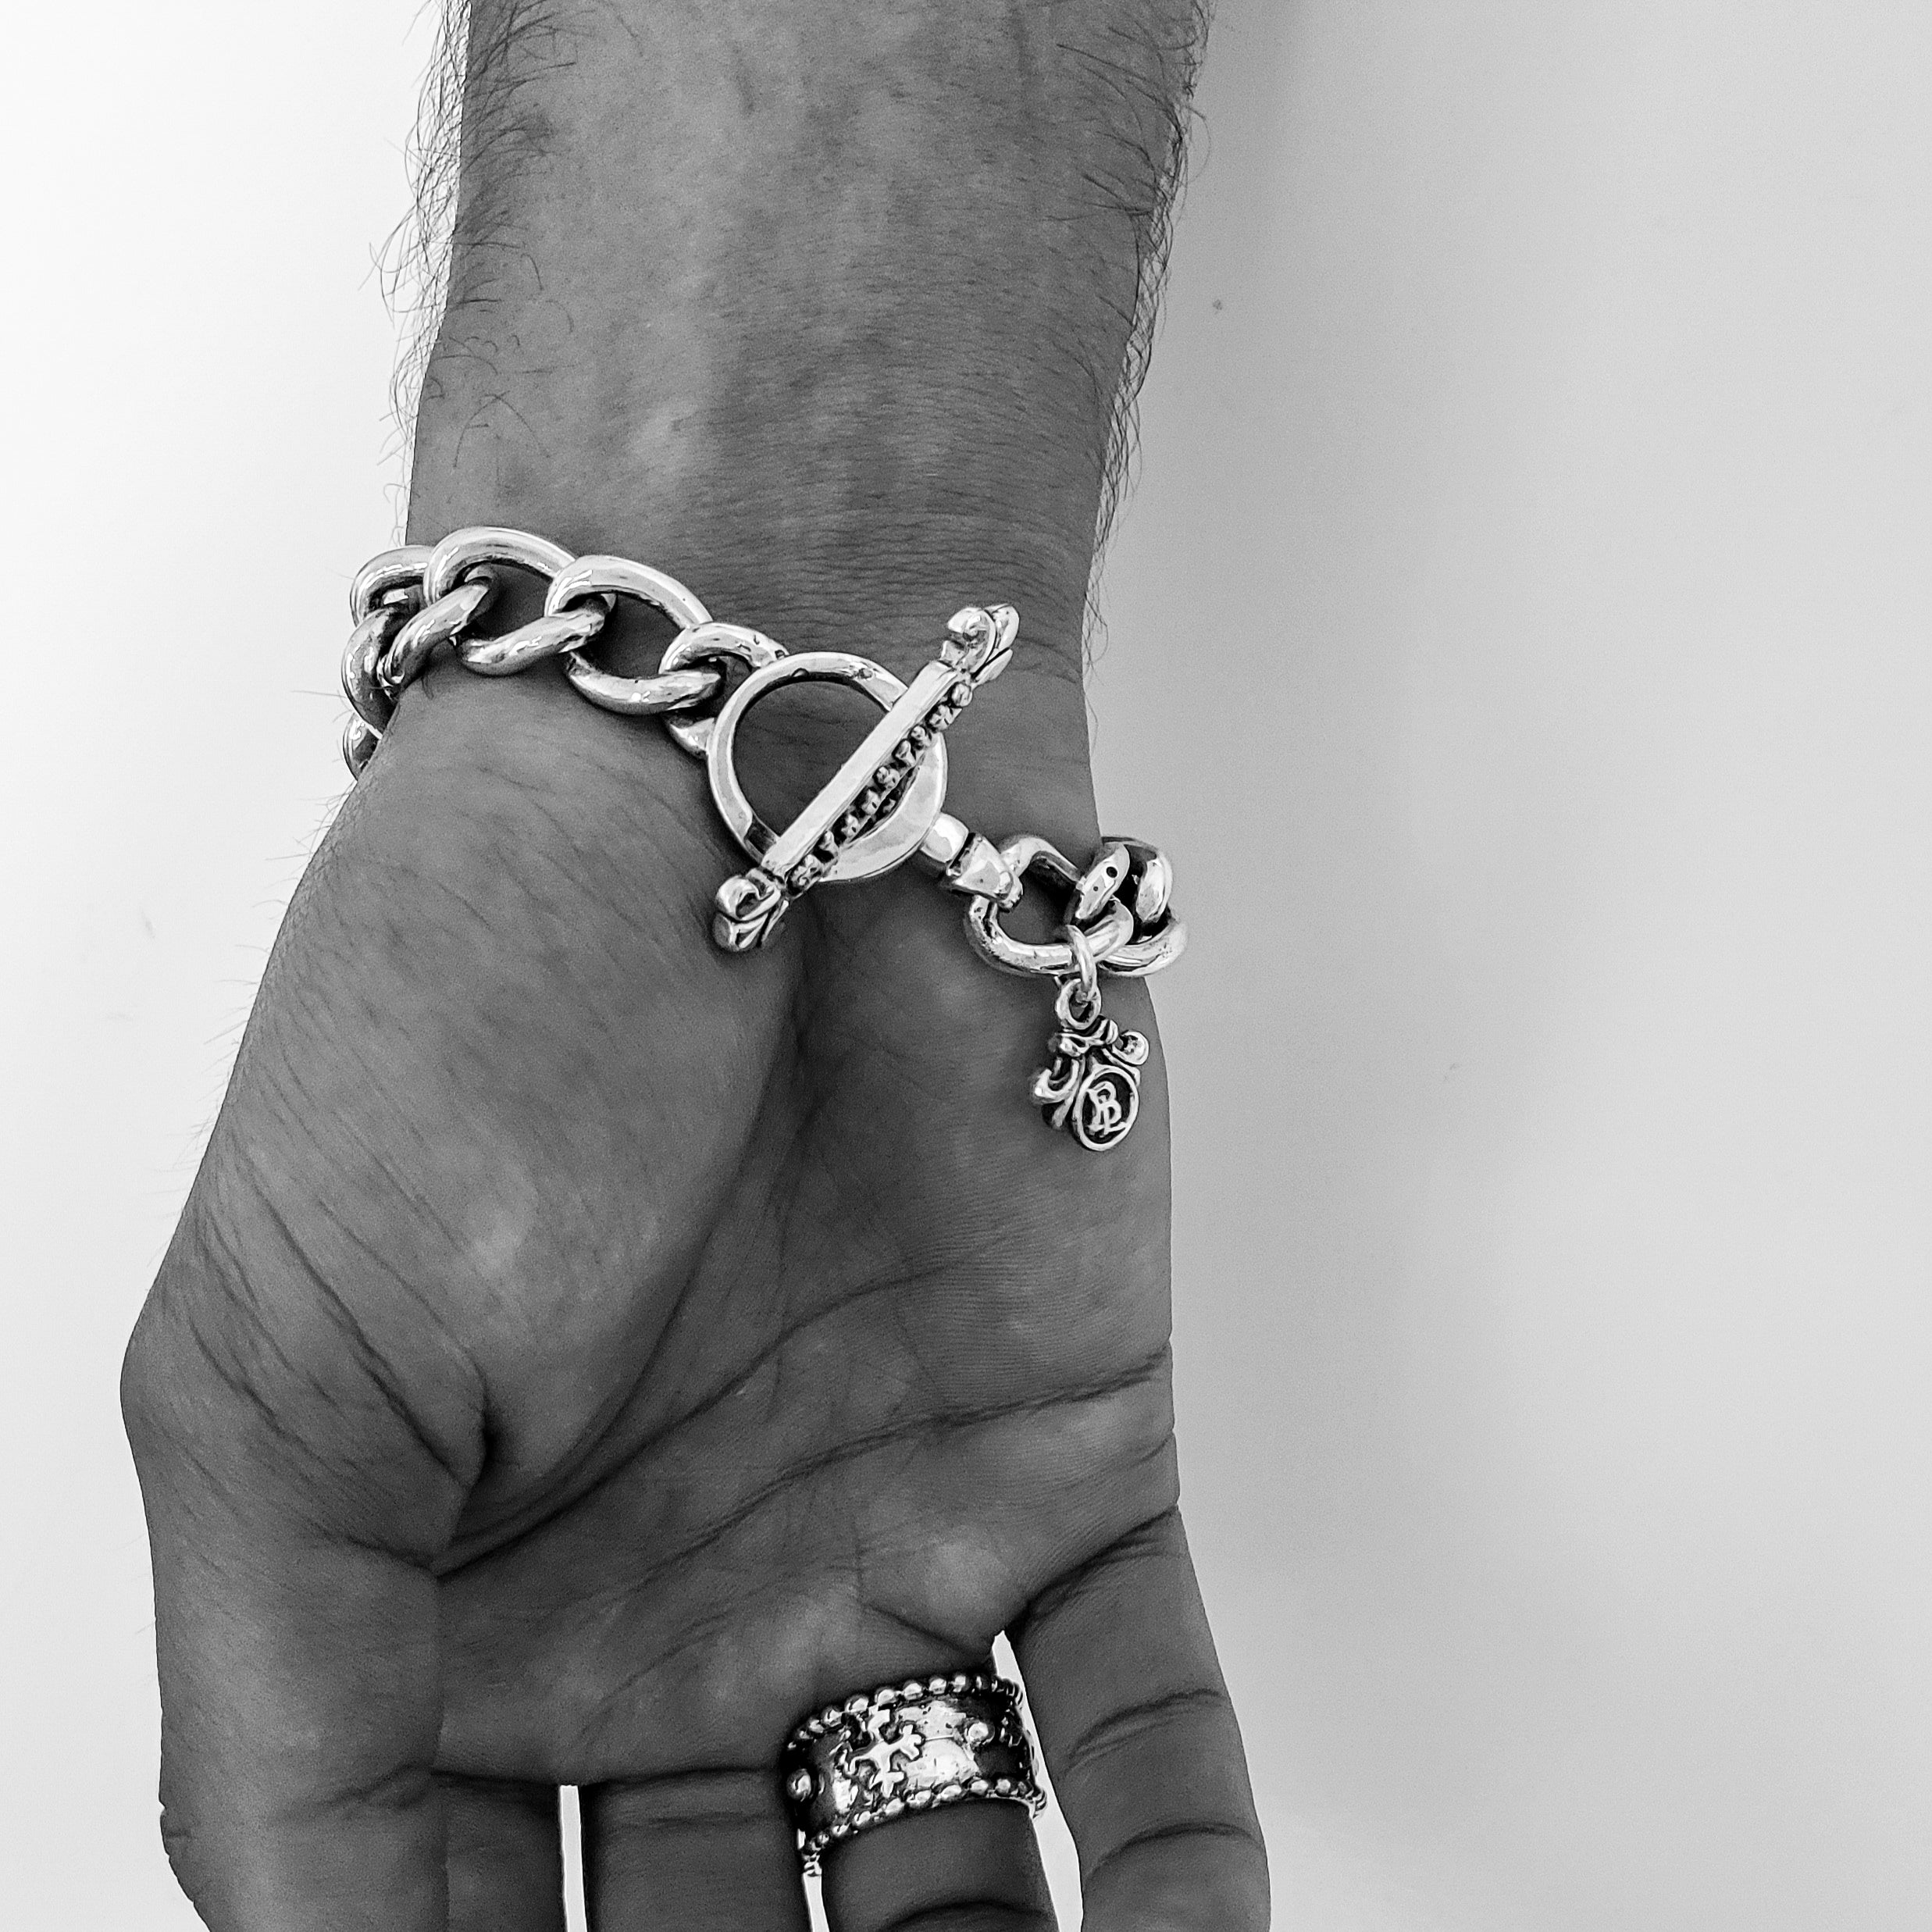 Bloodline Design Mens Bracelets The O.G. and Box Cross Link Bracelet shown on a model.